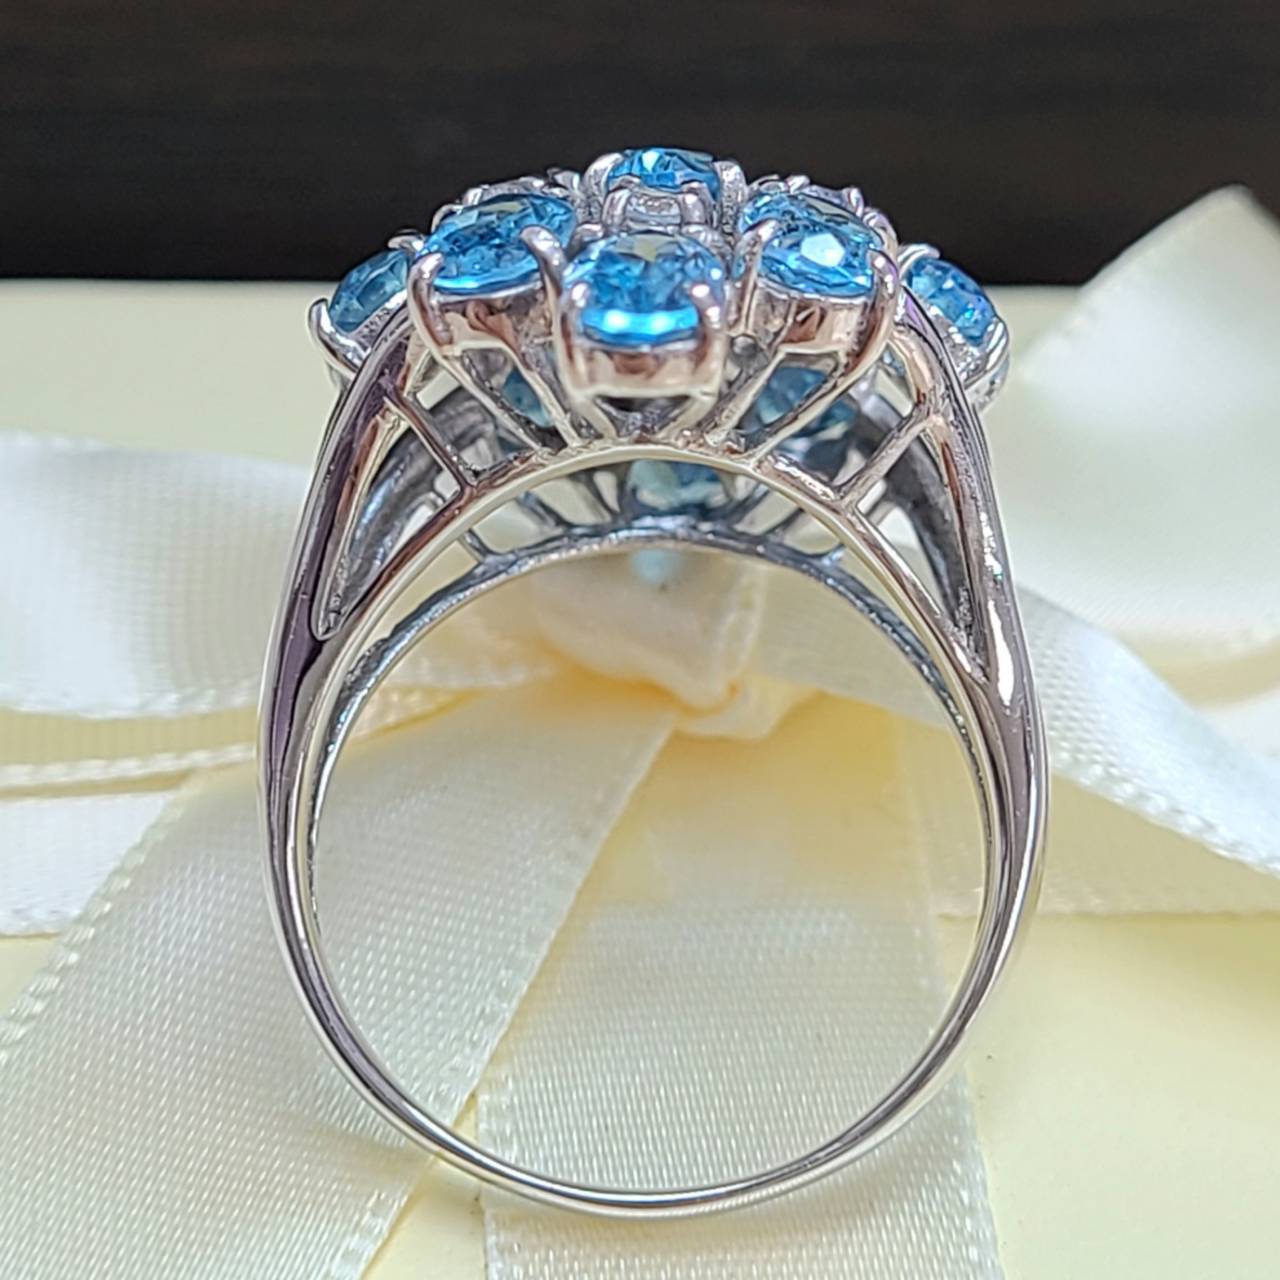 ボリューム 贅沢な輝き 天然 ブルートパーズ ダイヤモンド K14 WG ホワイトゴールド 14金 リング 指輪 11月誕生石 【鑑別書付】